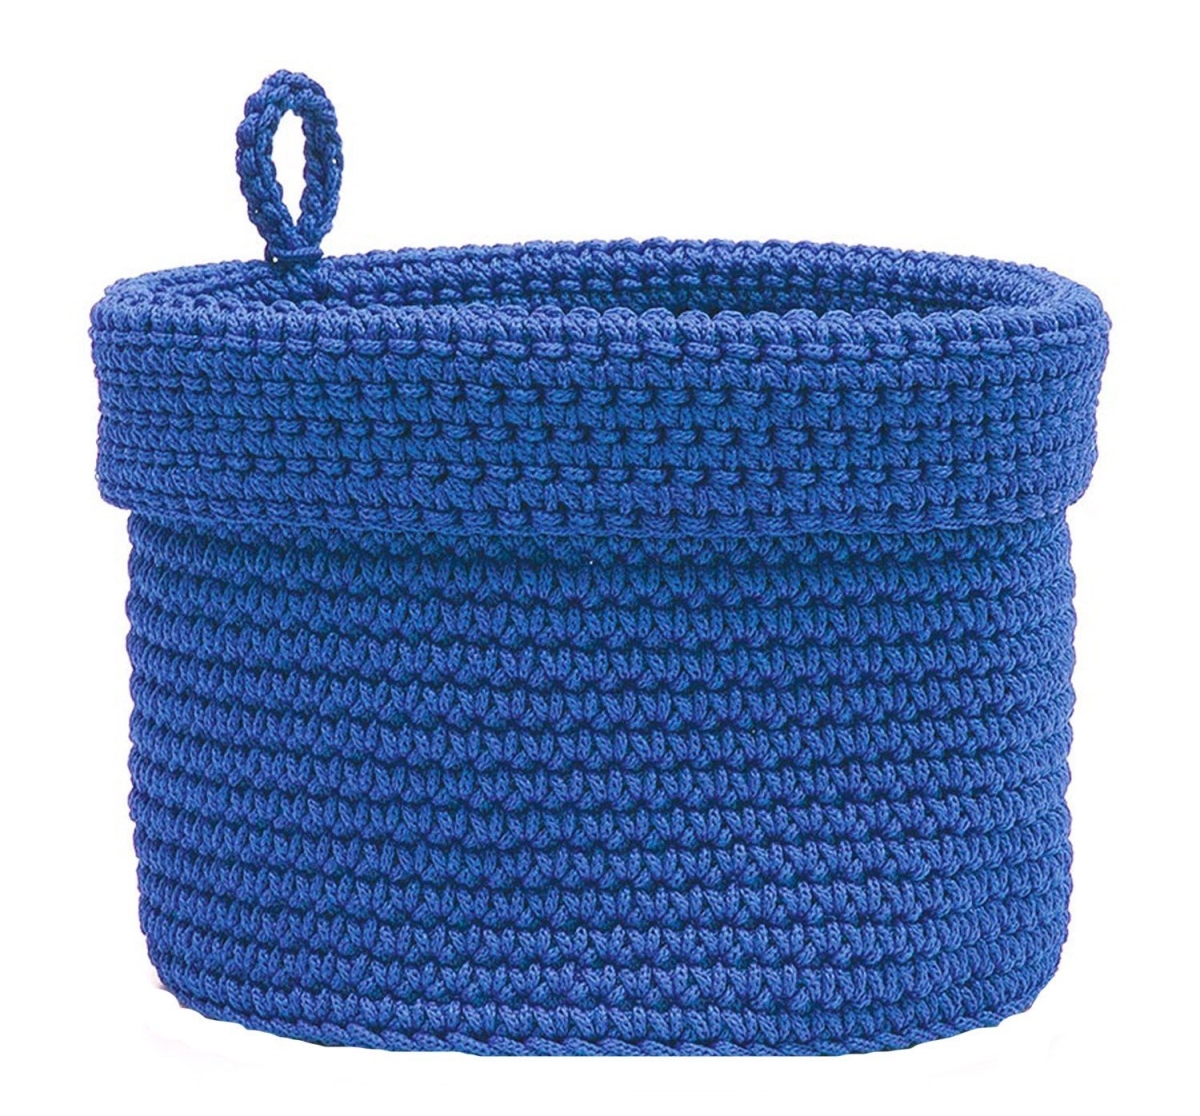 10 X 10 In. Mode Crochet Basket With Loop, Cobalt Blue